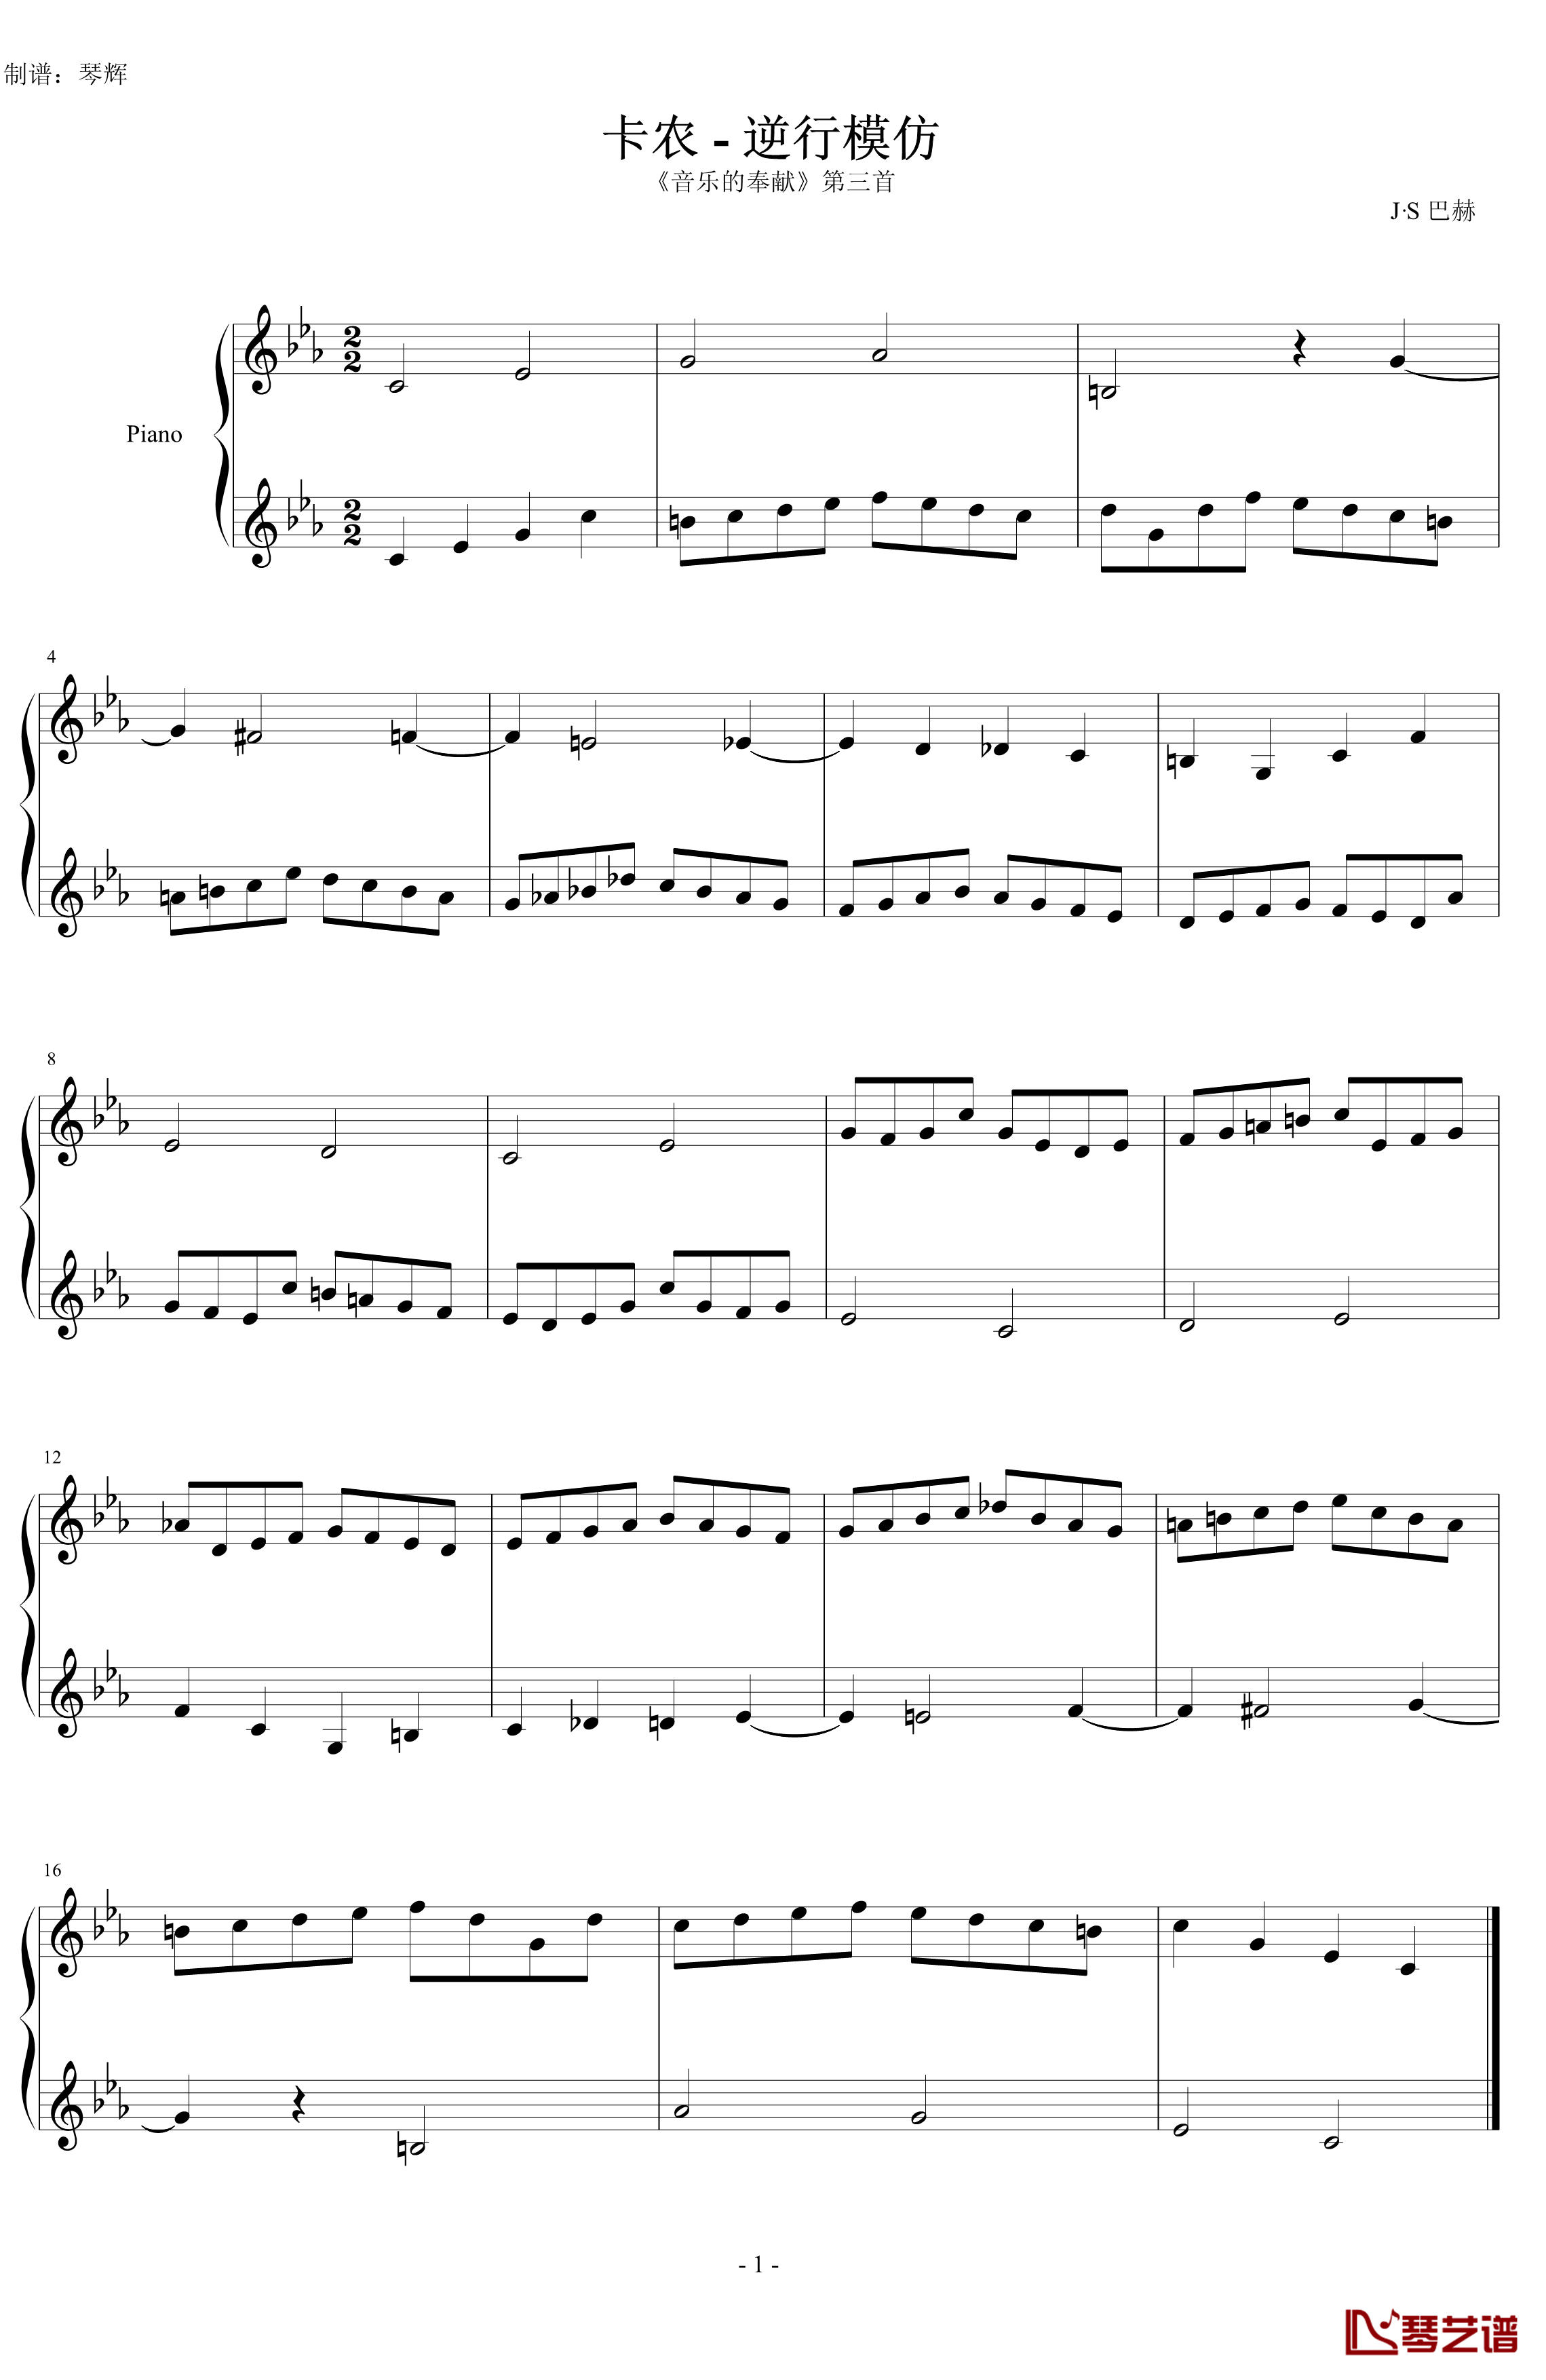 卡农钢琴谱-逆行模仿-巴赫-P.E.Bach1